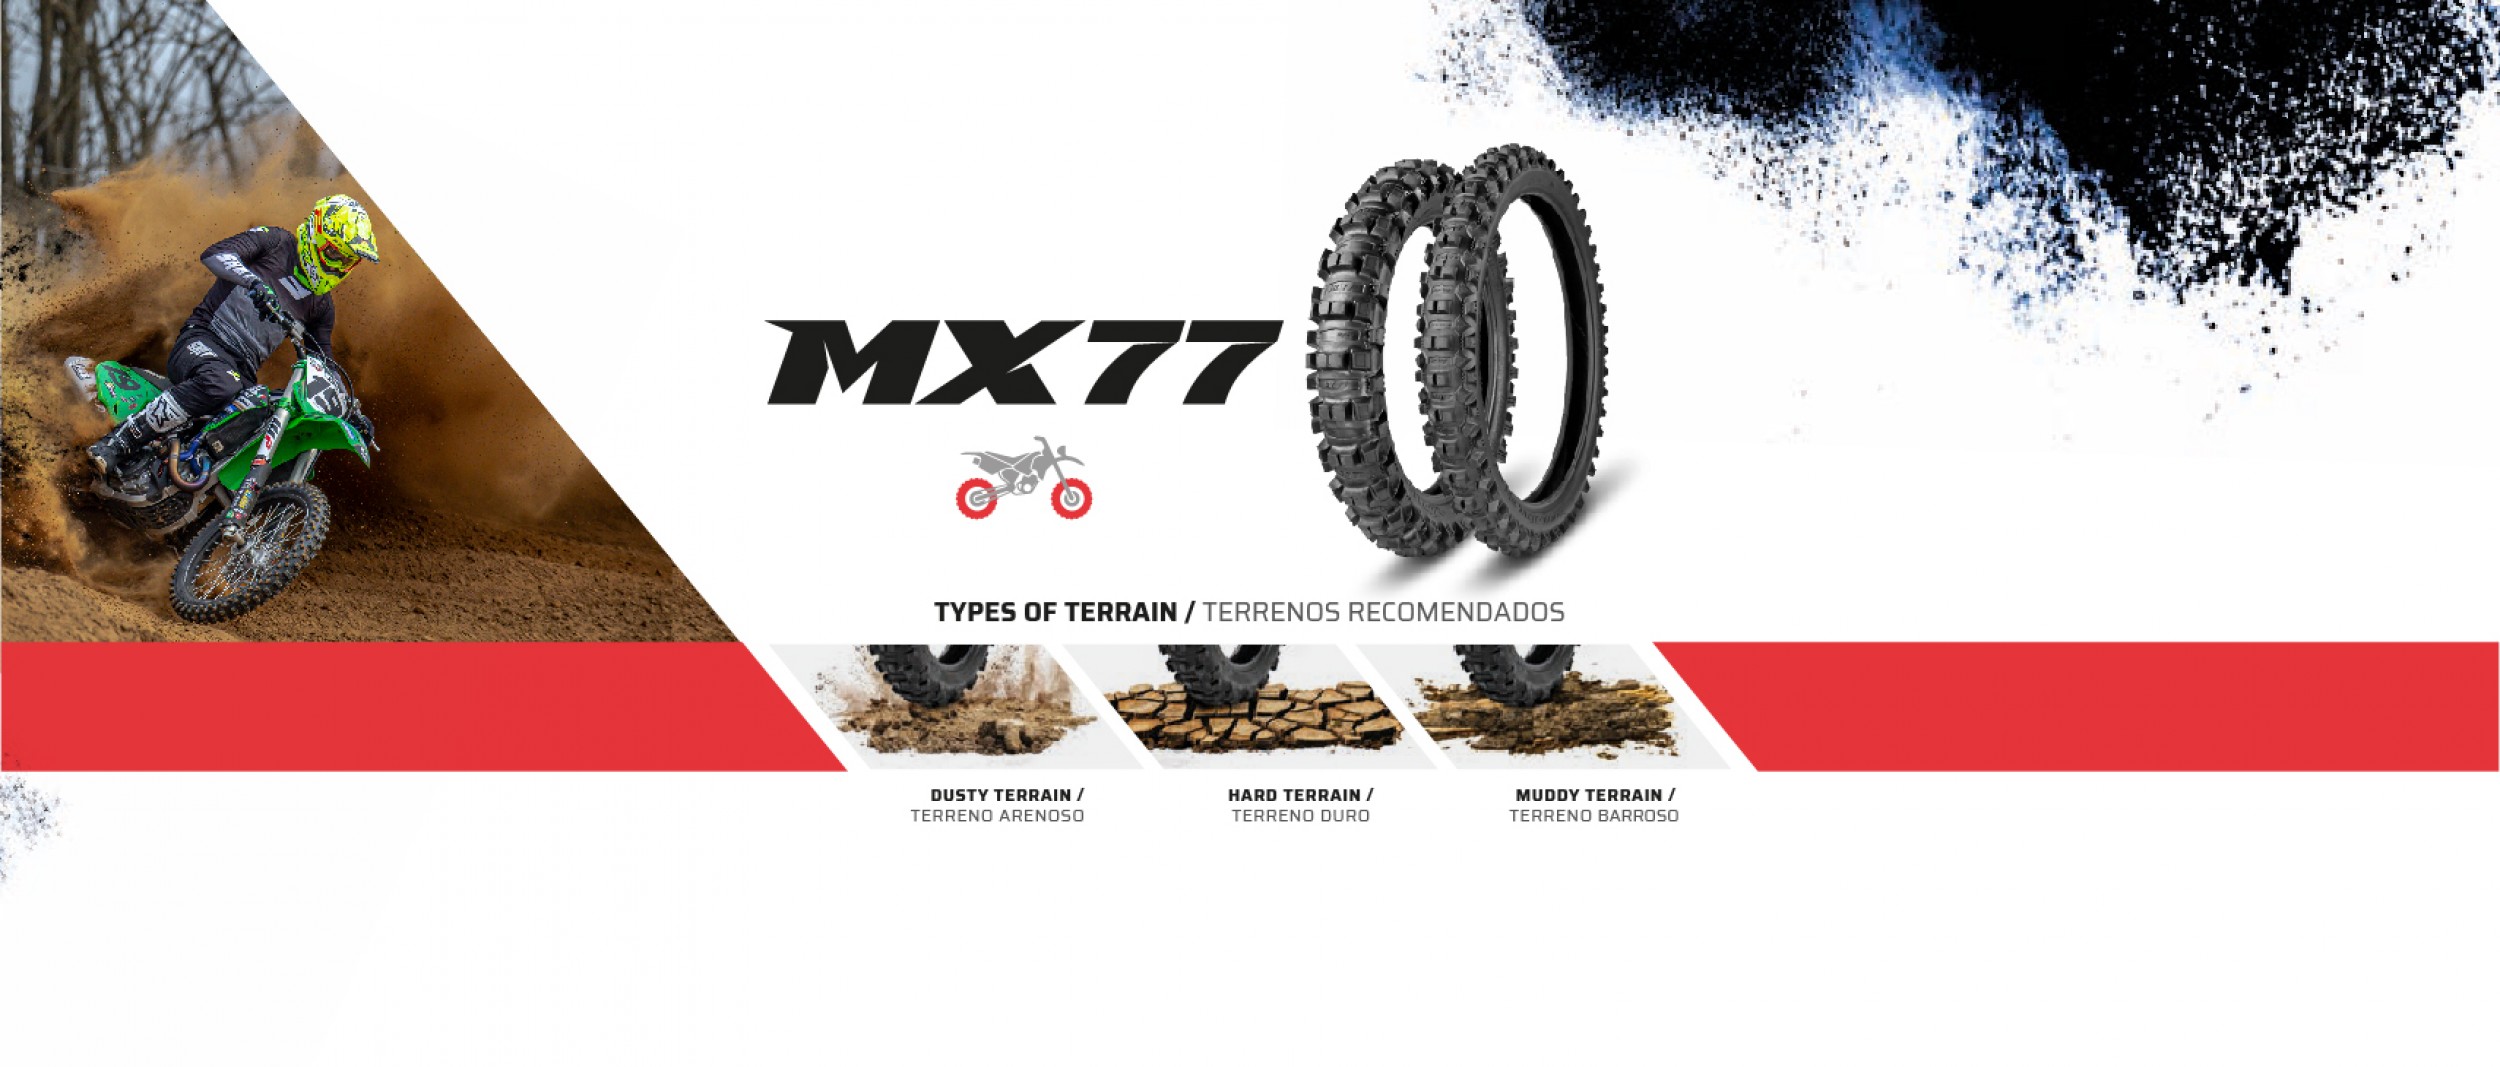 MX 77